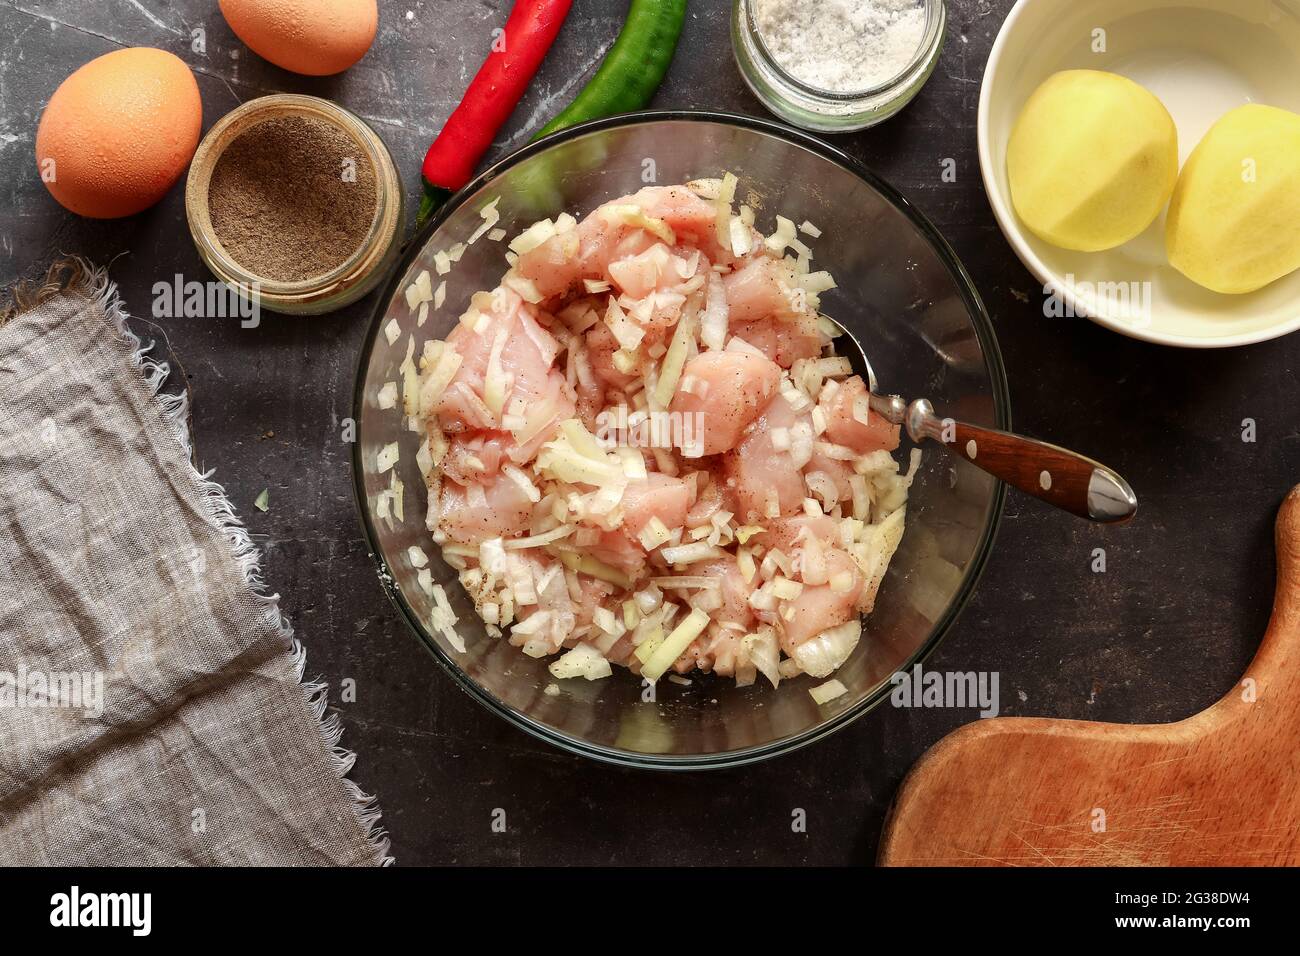 Préparation étape par étape de viande hachée pour boulettes de poulet. Vue de dessus. Processus de cuisson dans la cuisine. Recette. Viande et oignon Banque D'Images